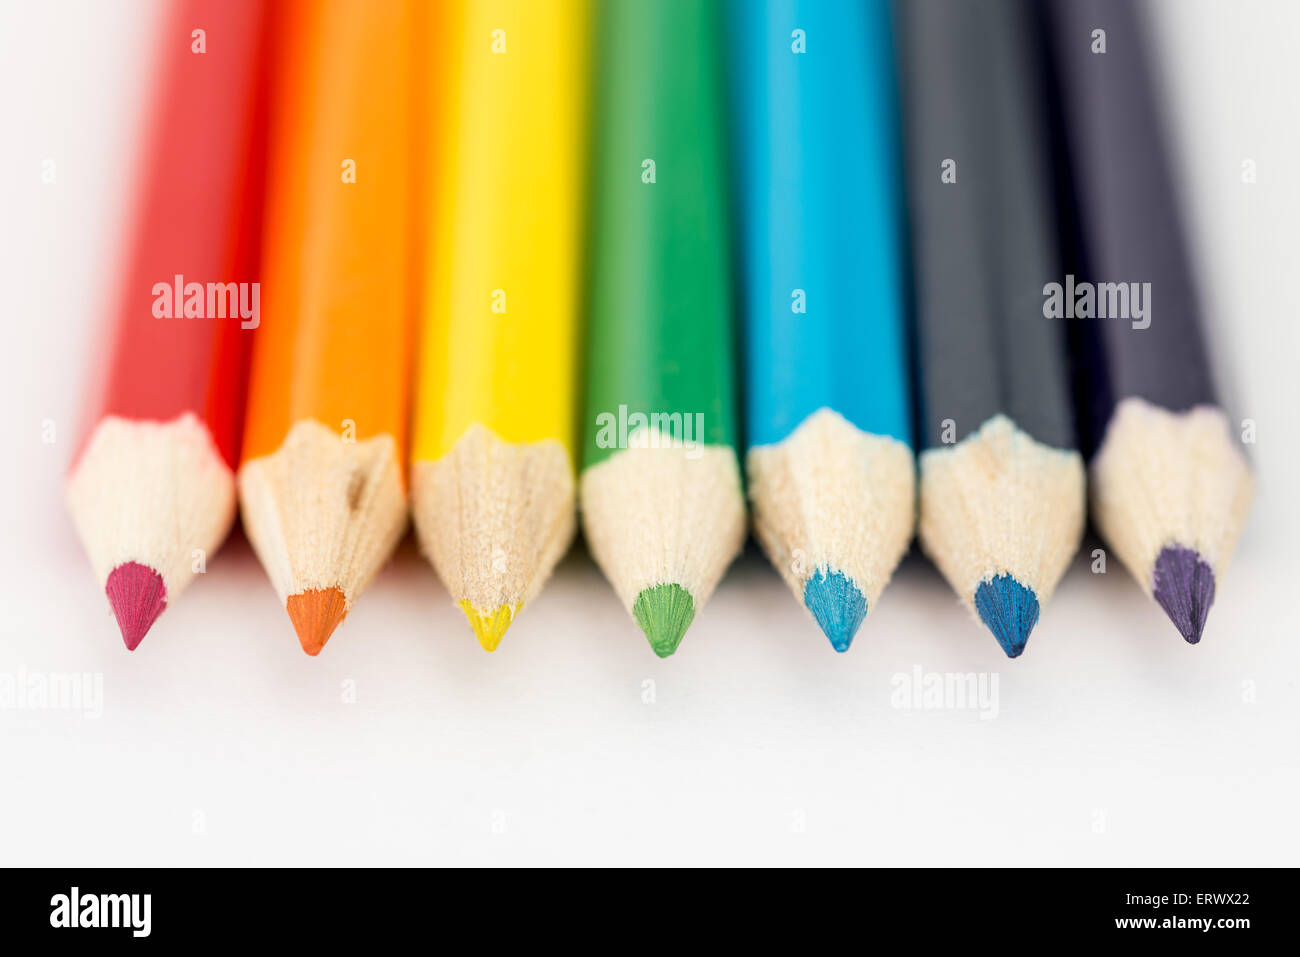 Rouge, orange, jaune, vert et bleu de crayons dans une rangée Banque D'Images